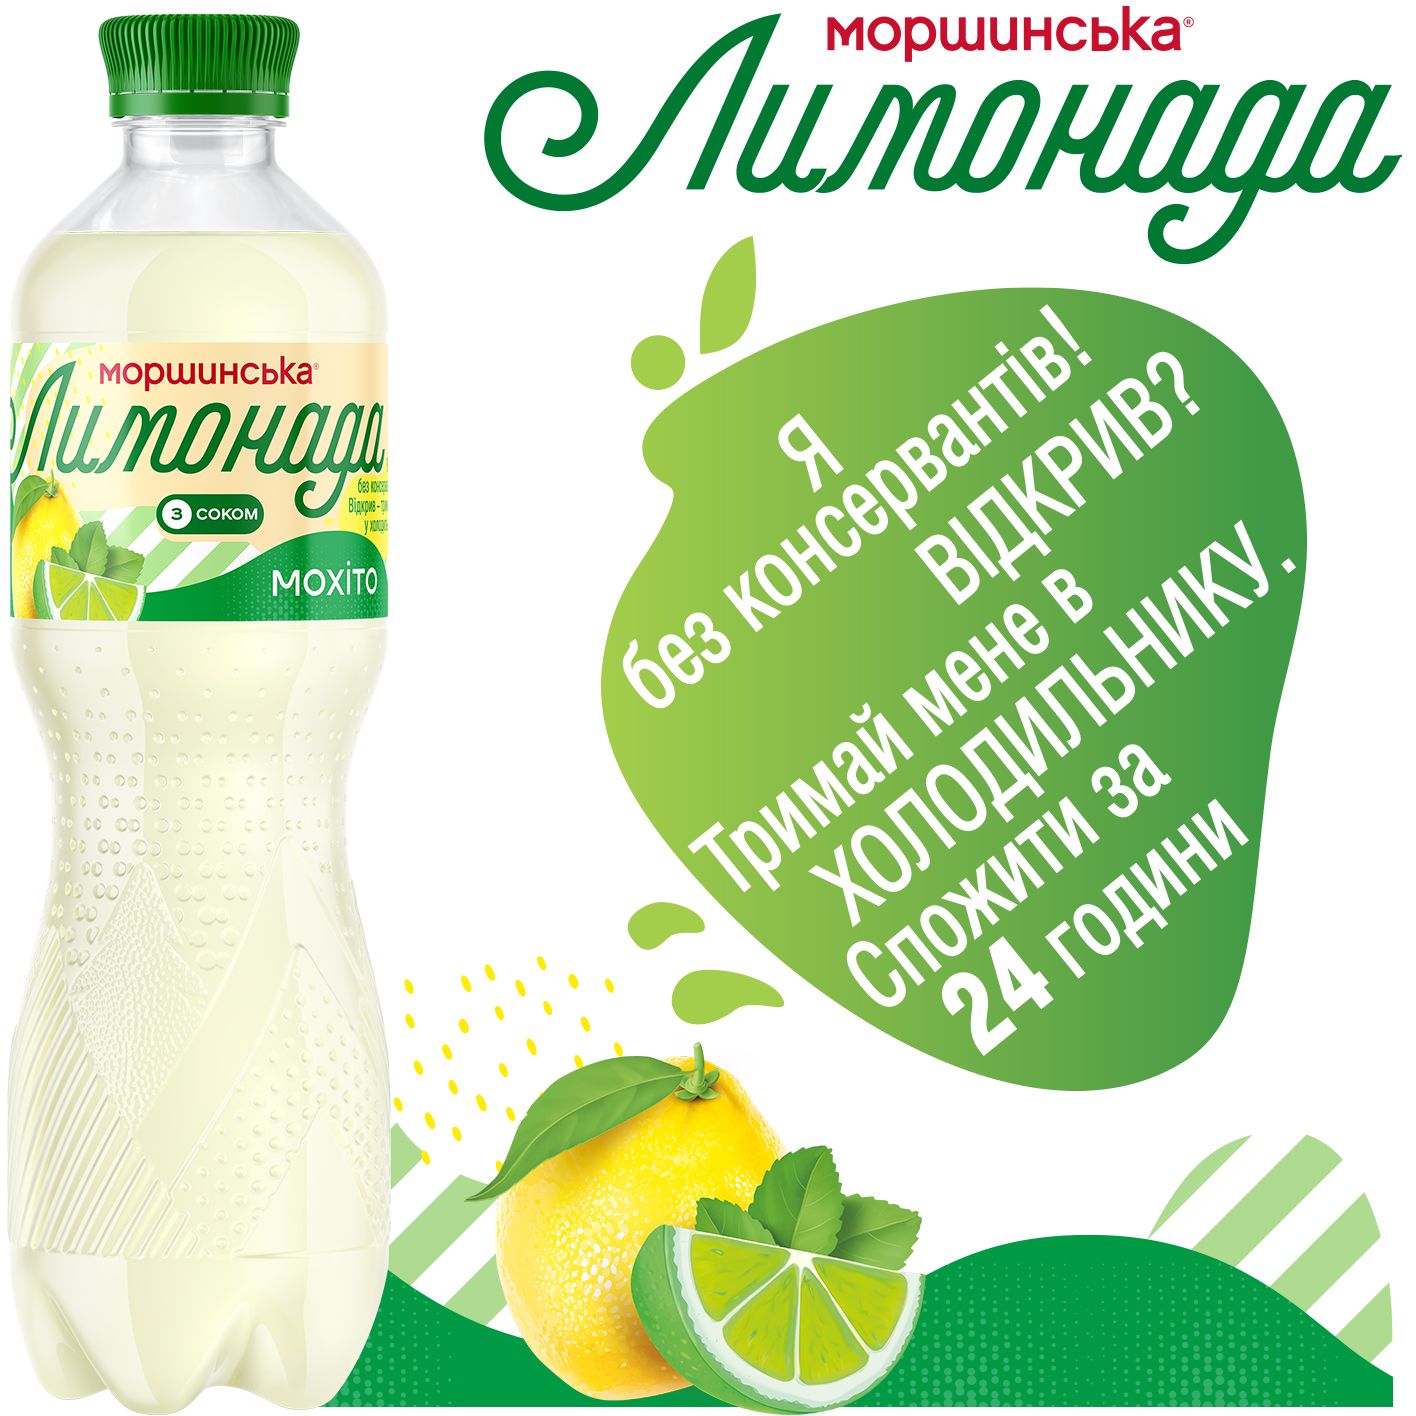 Напиток Моршинская Лимонада Мохито среднегазированный 0.5 л - фото 5